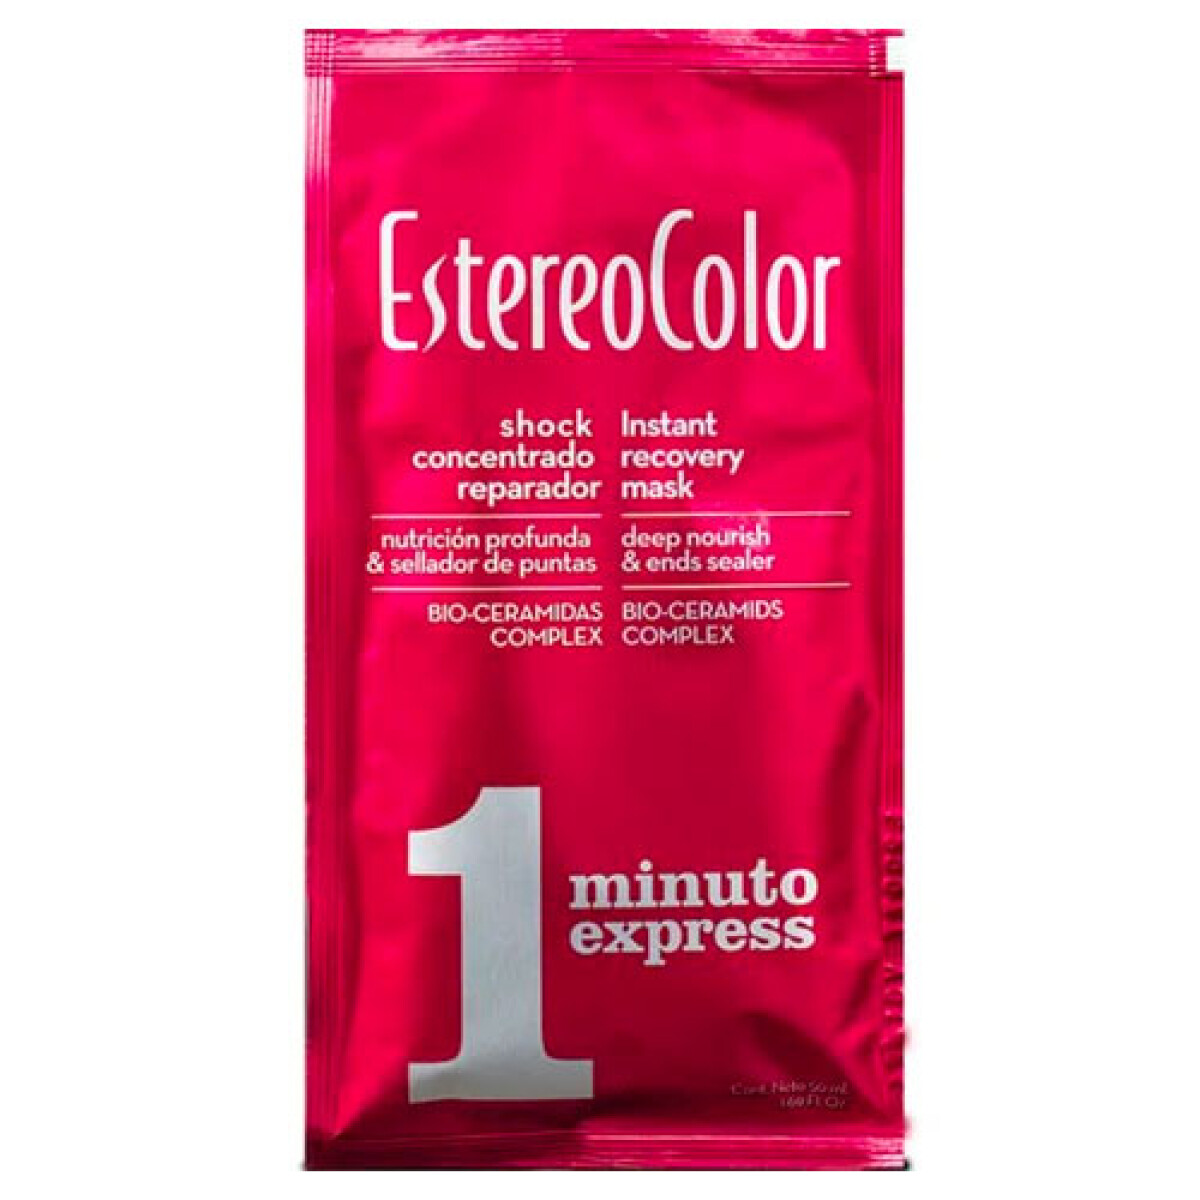 Baño de Crema Estereo Color 1 minuto Express 50ml 